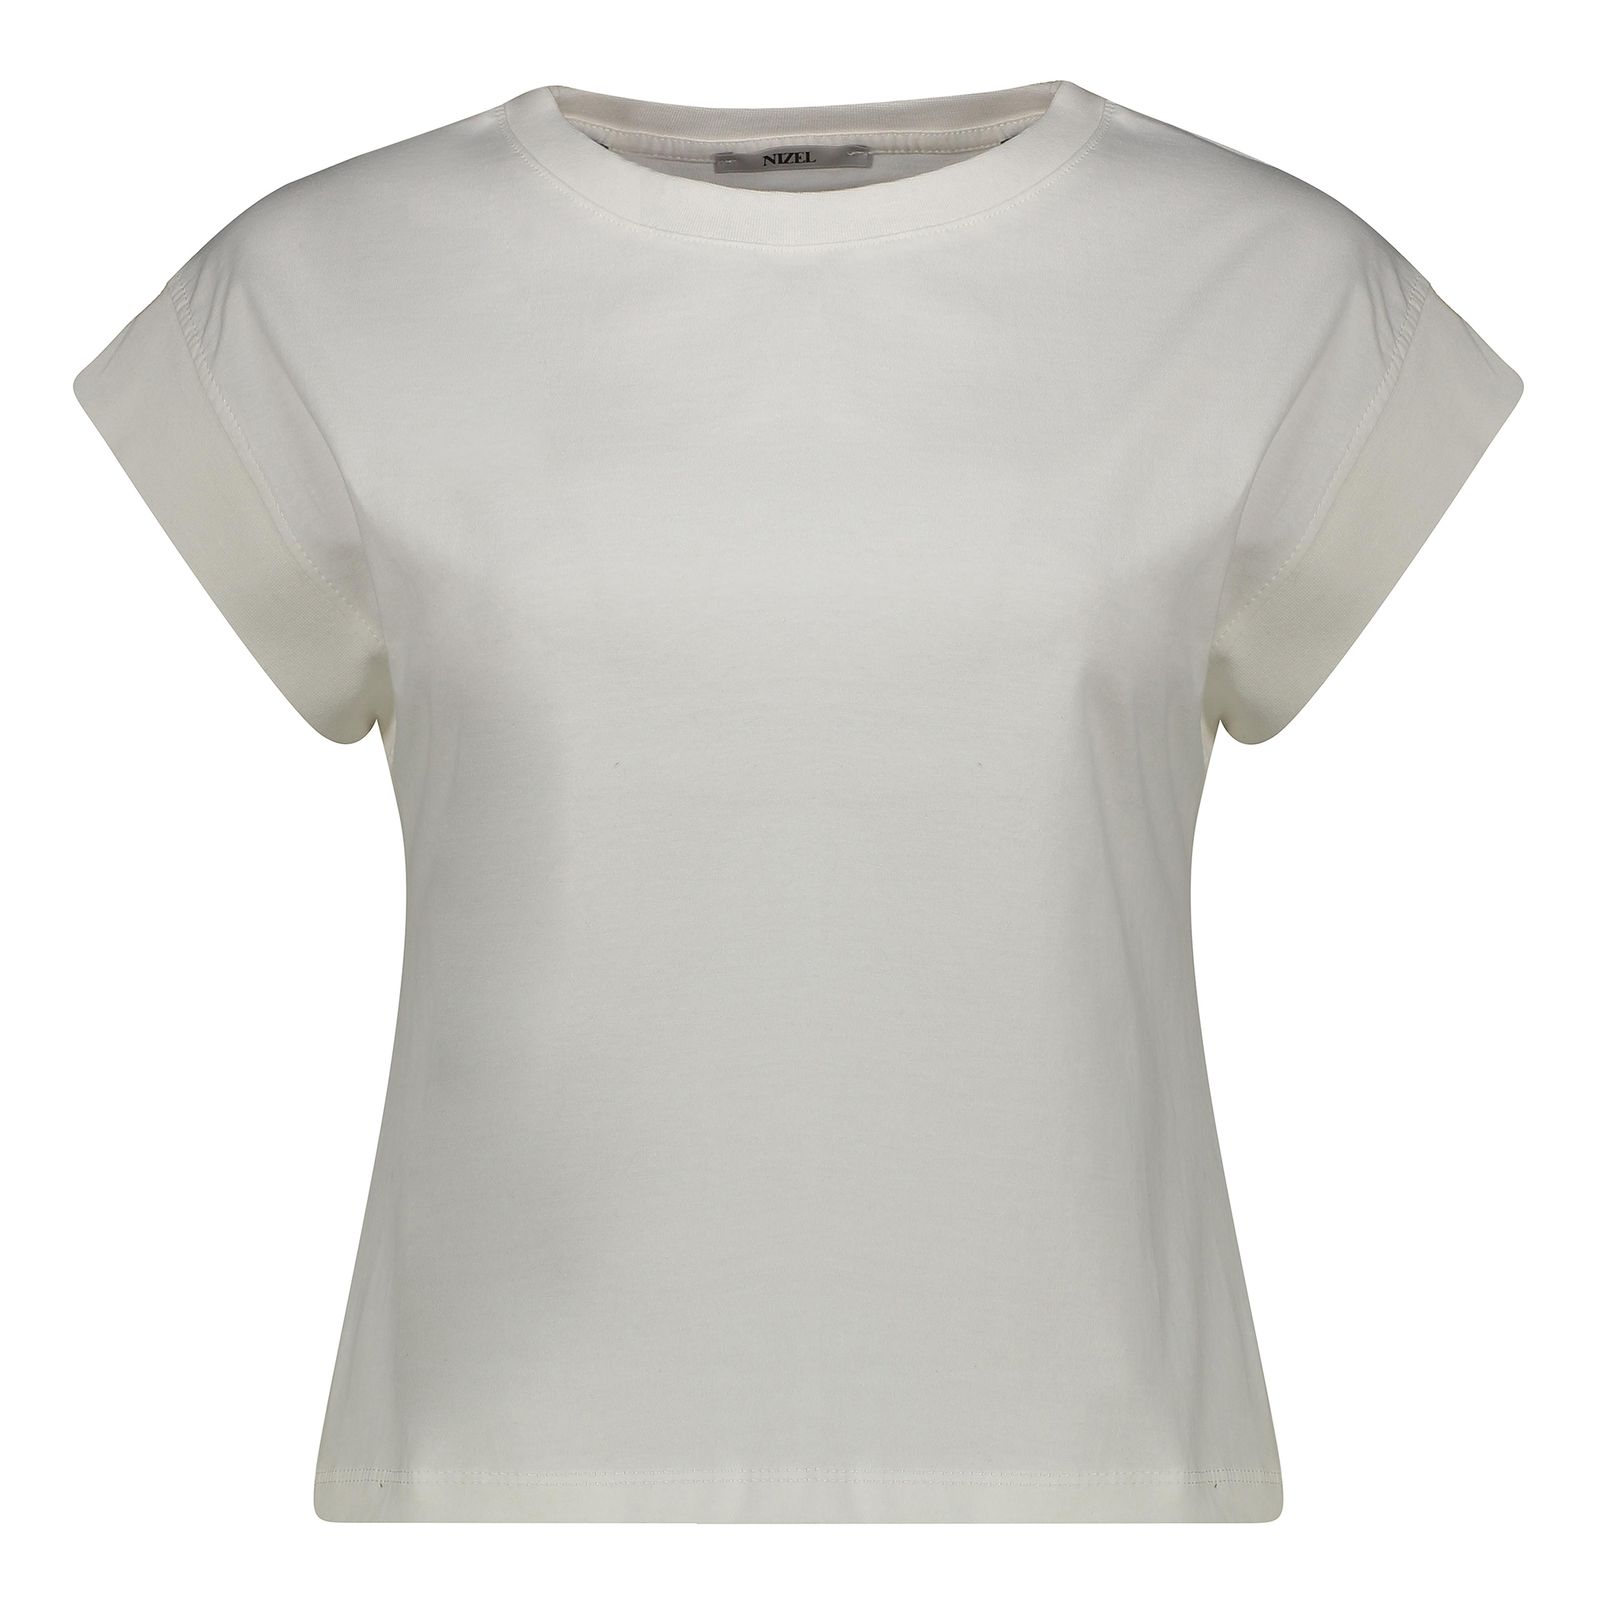 تی شرت آستین کوتاه زنانه نیزل مدل 0366-001 رنگ سفید -  - 1